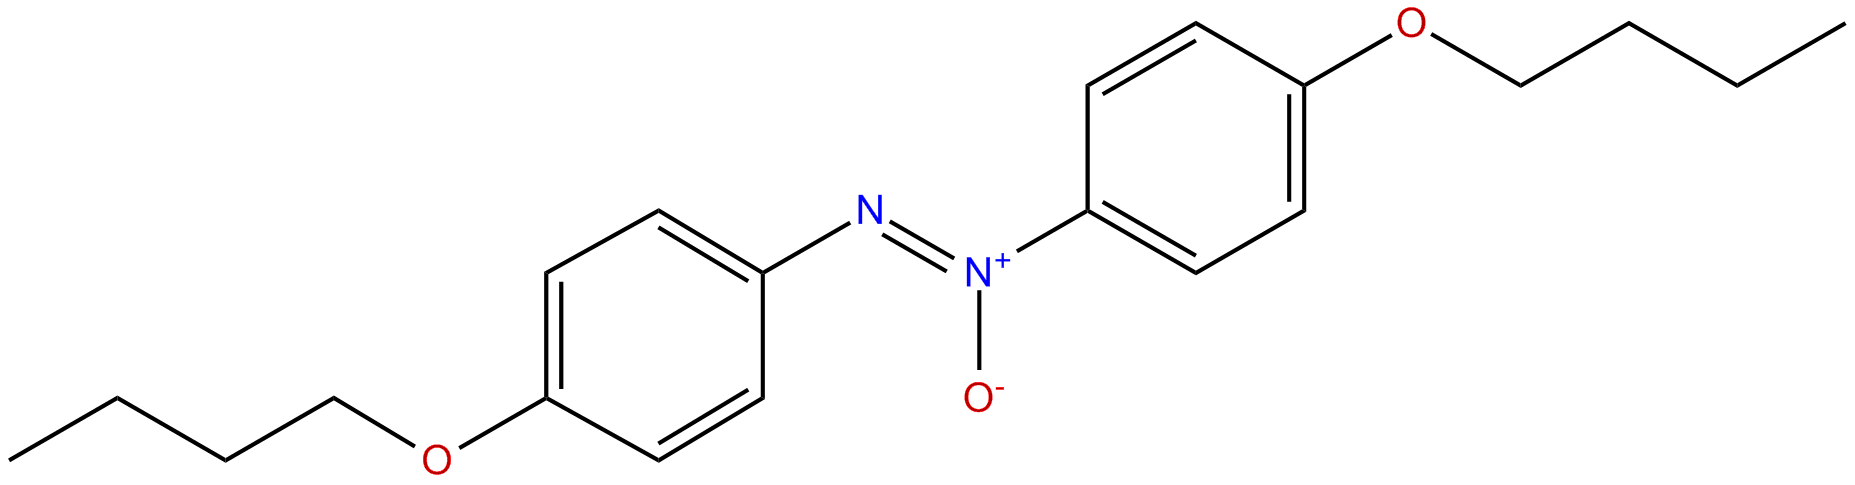 Image of 4,4'-dibutoxyazoxybenzene